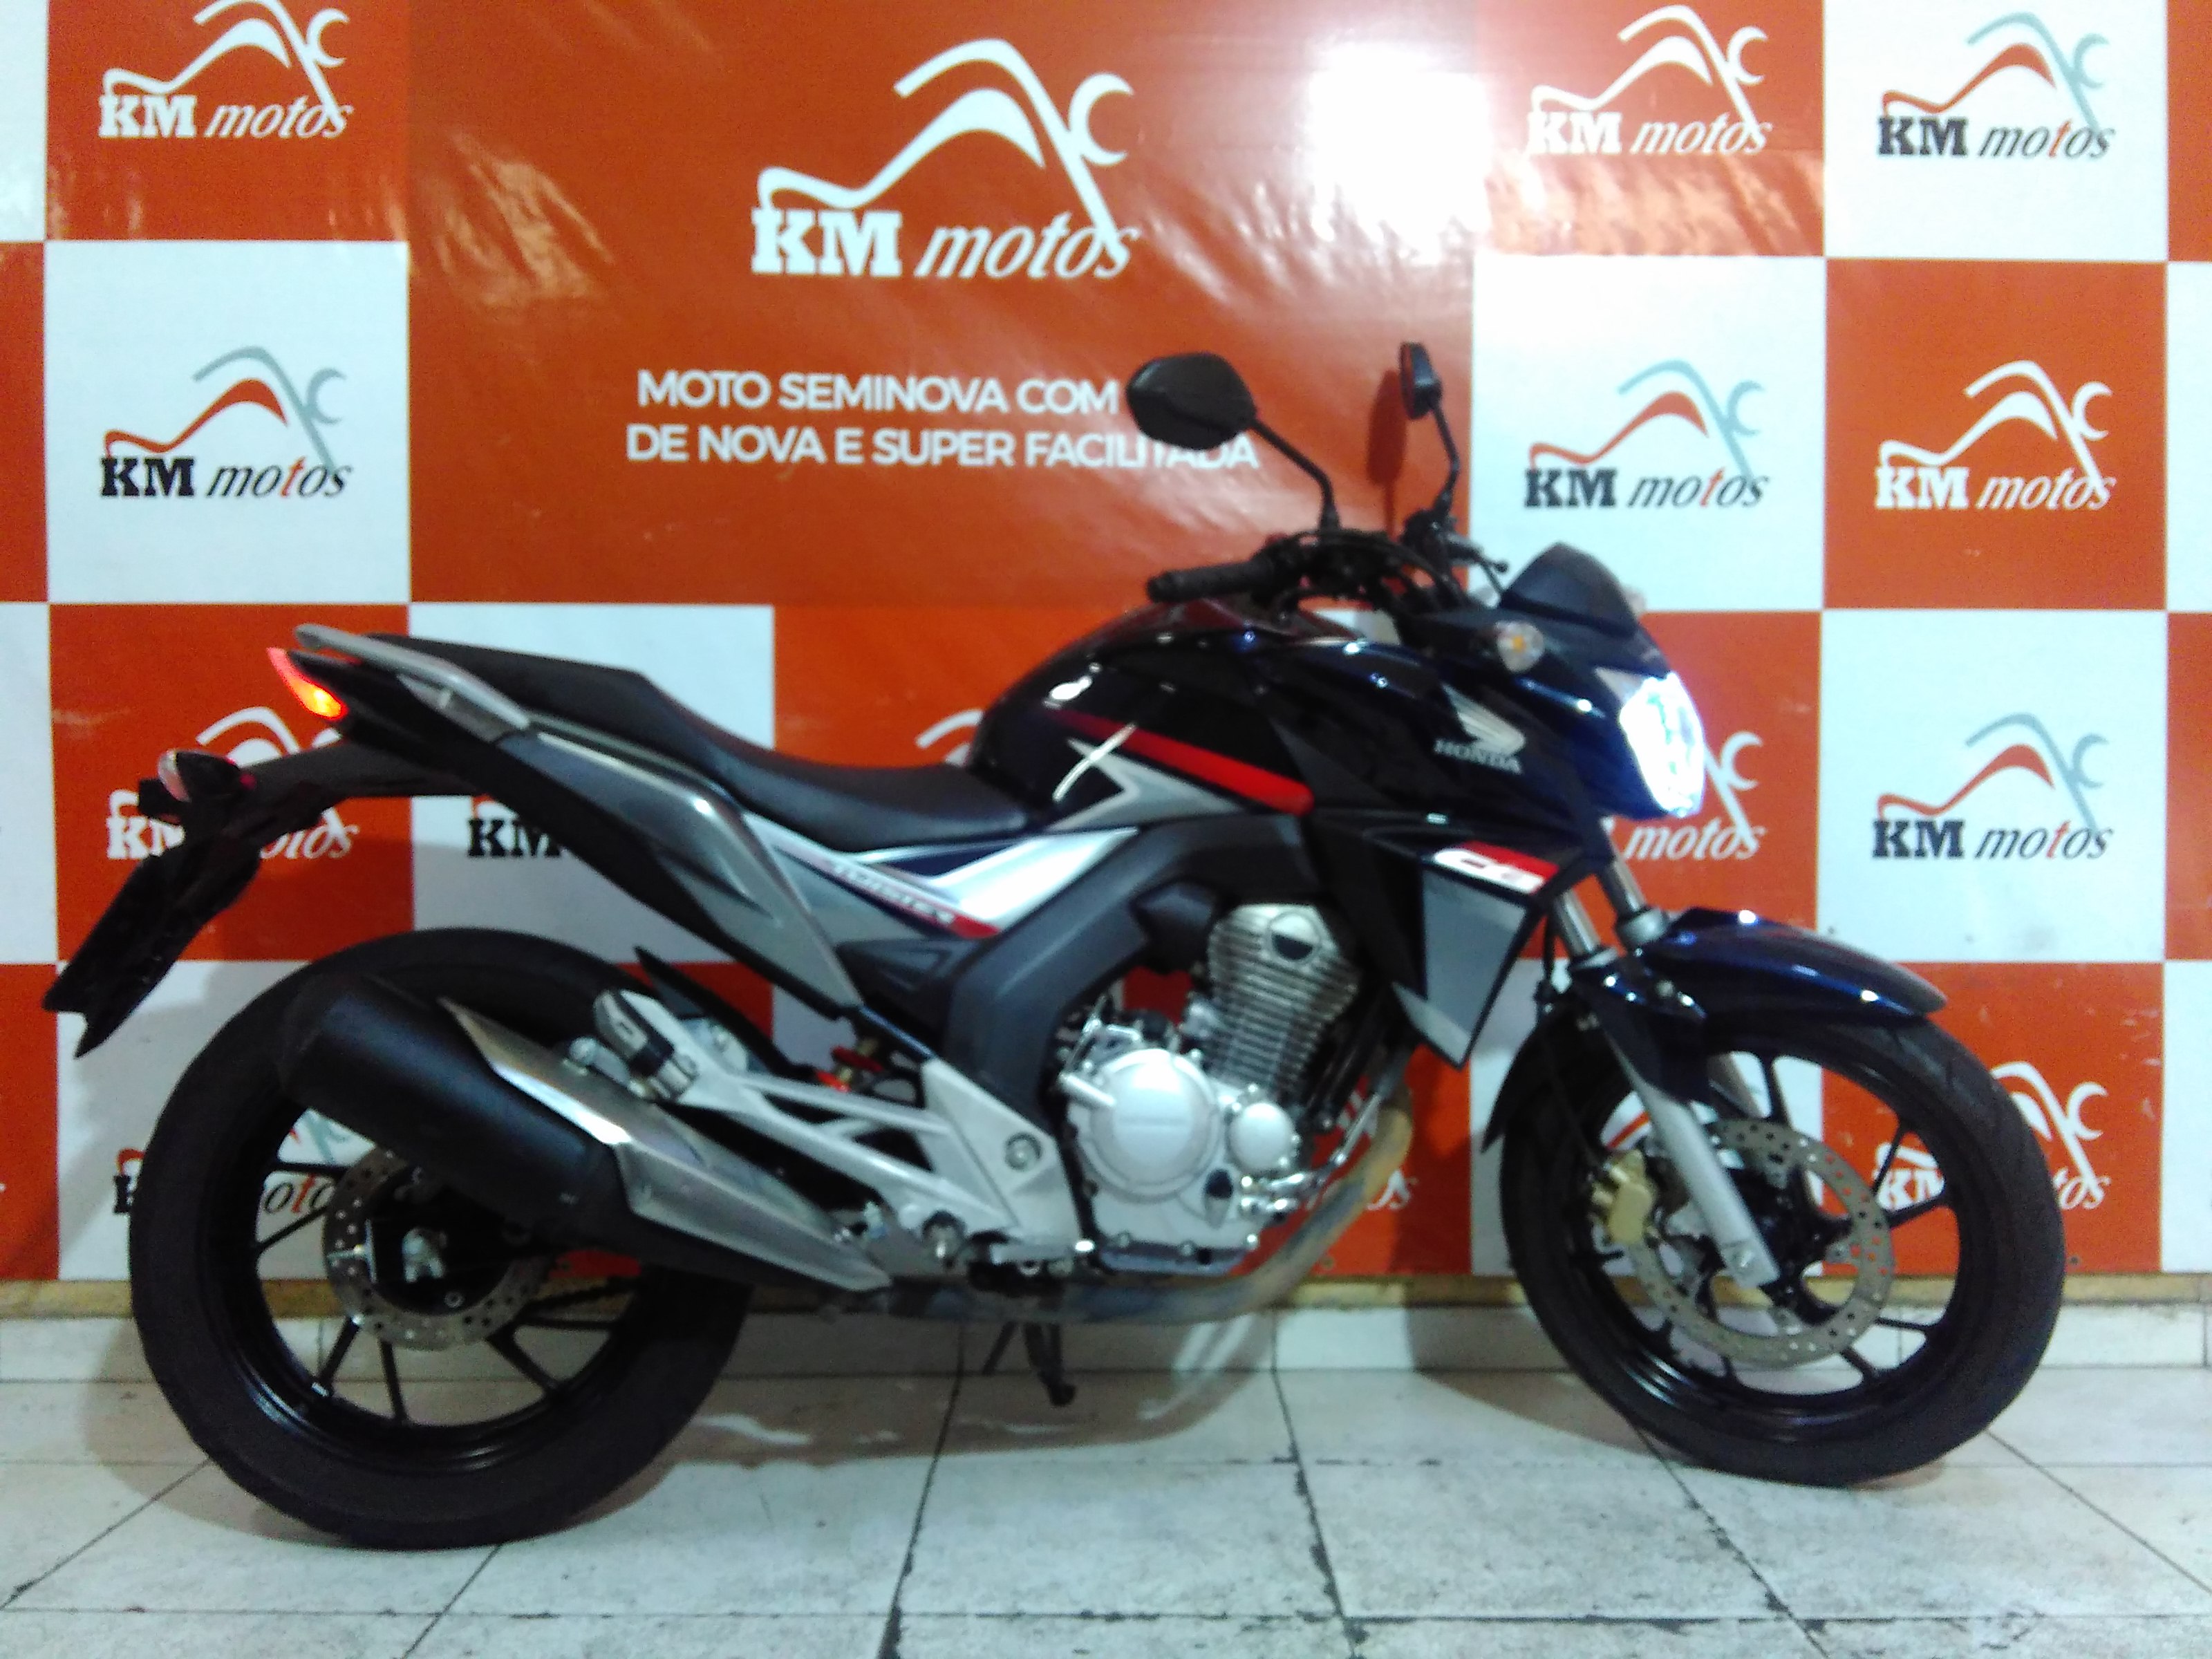 Honda CB 250 Twister 2018 Azul KM Motos Sua Loja de